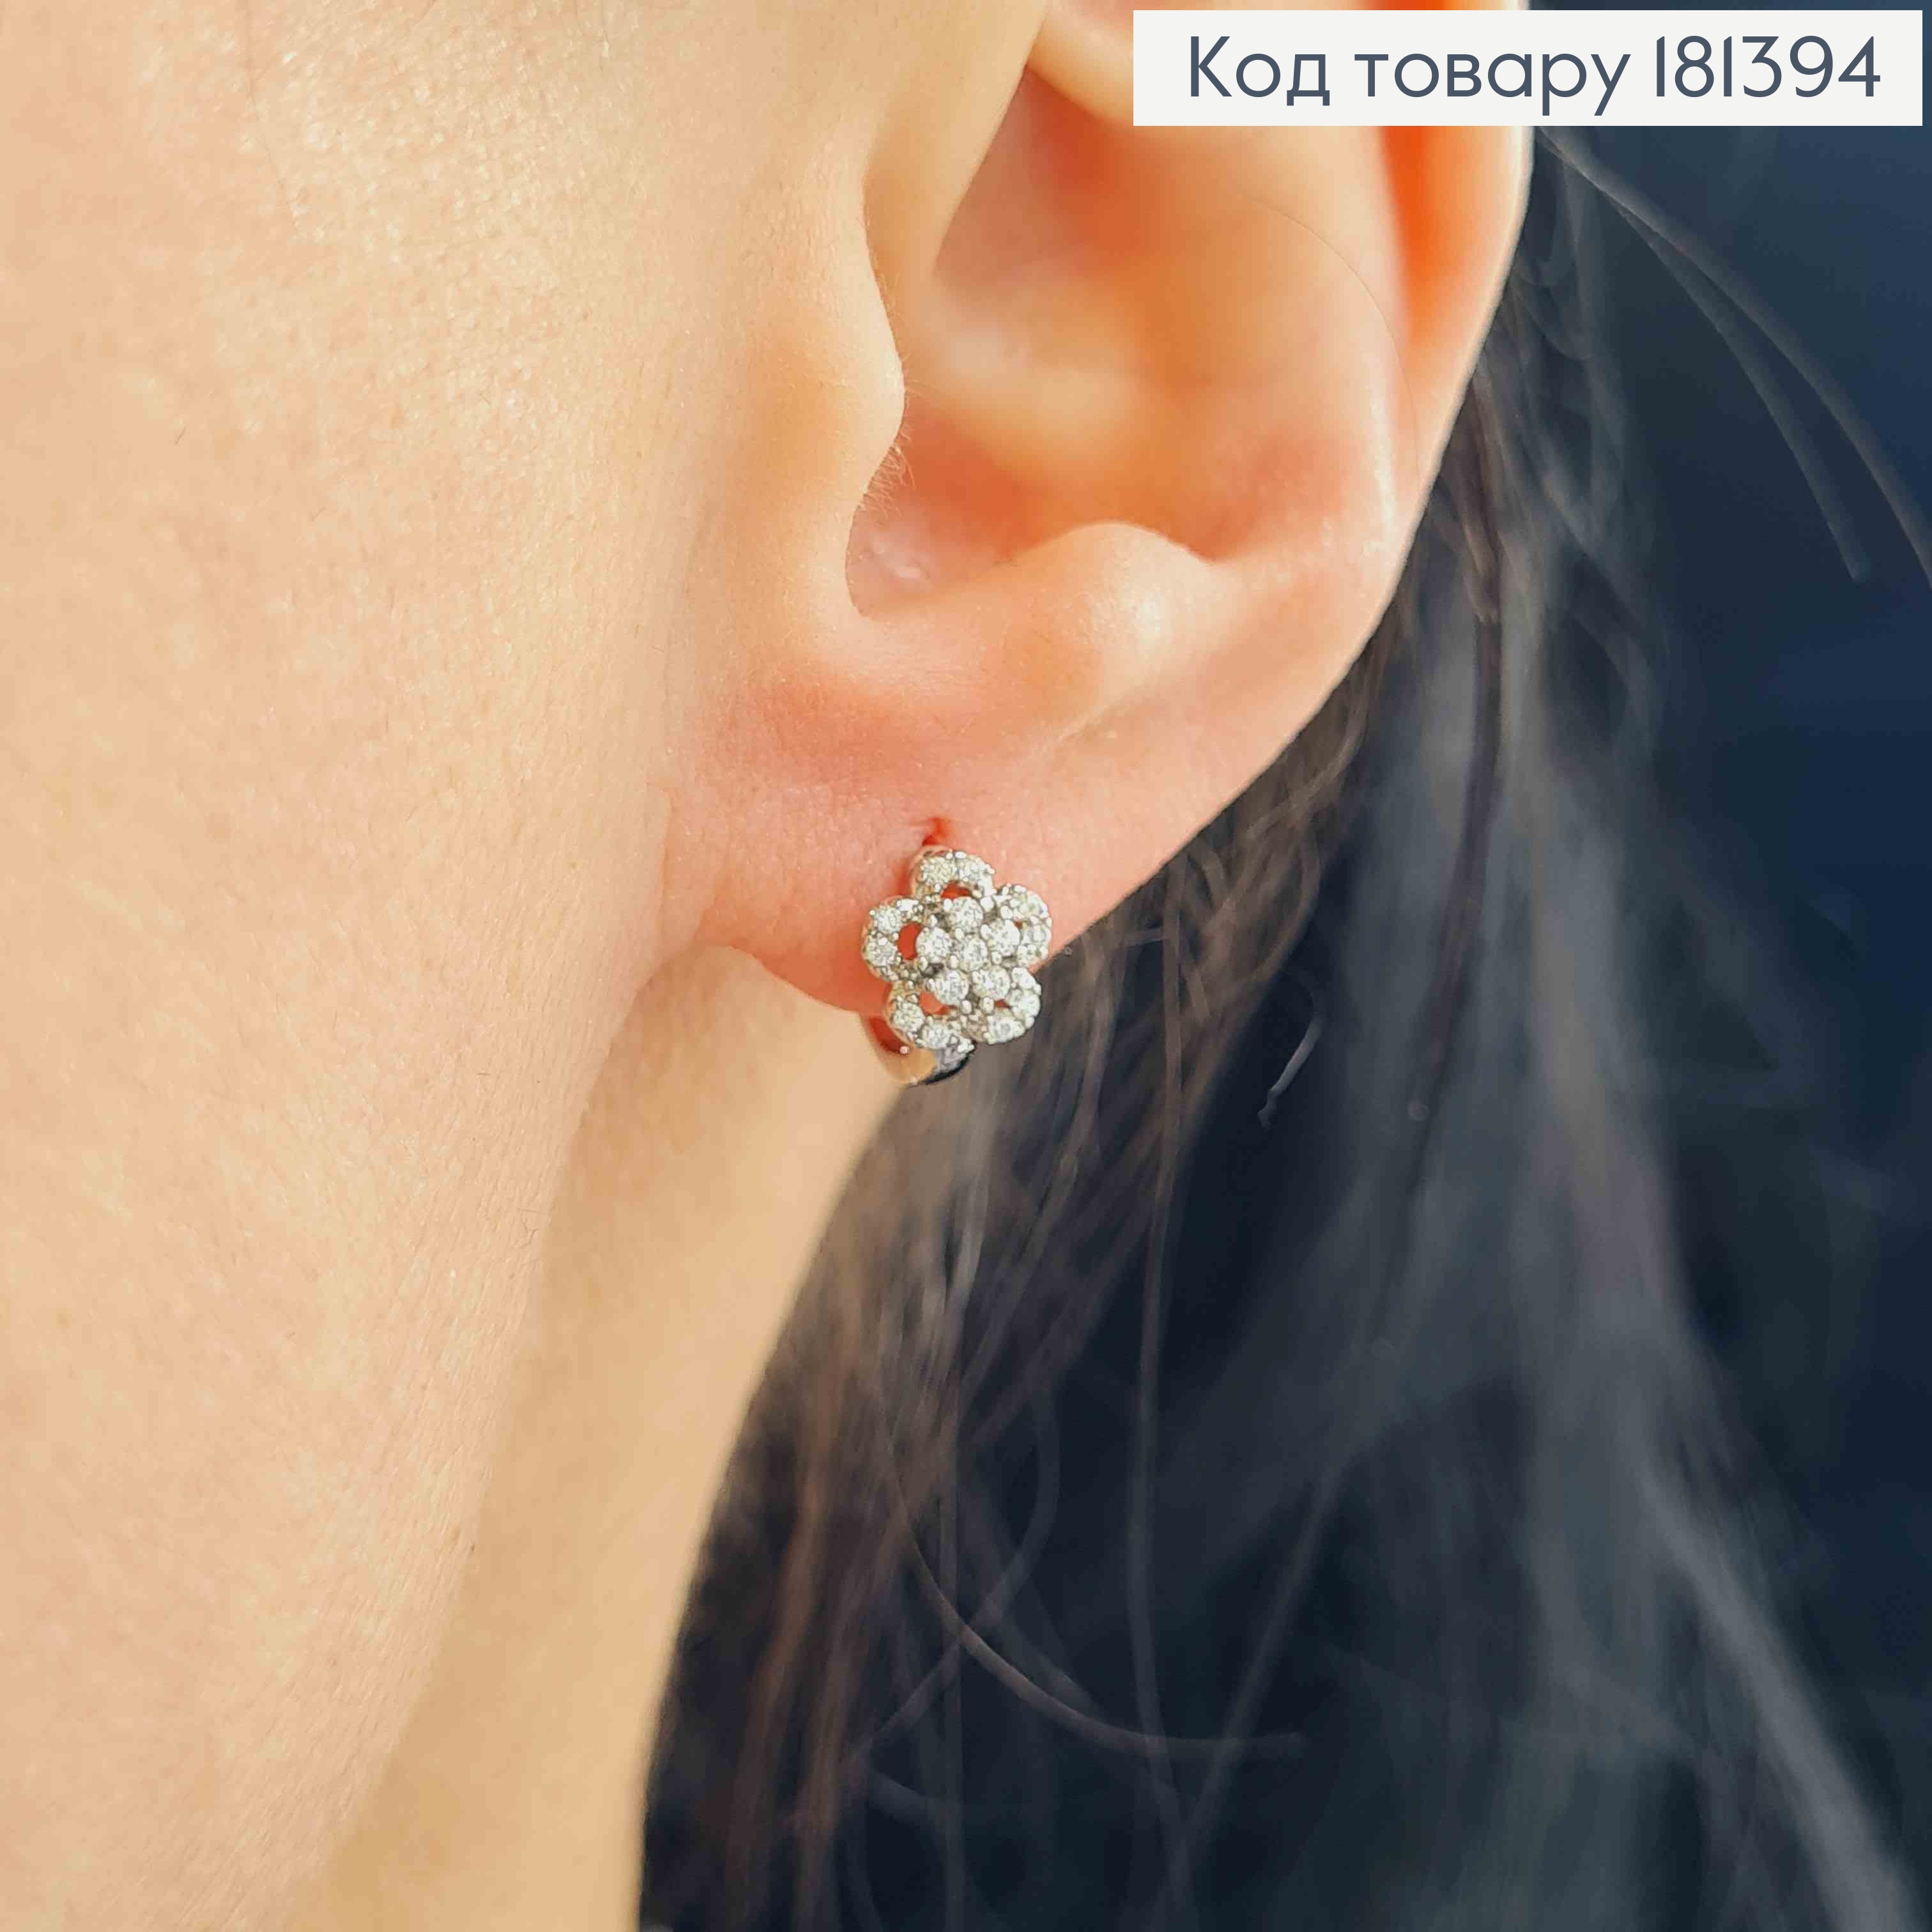 Серьги родовые, кольца 1см, с цветочком в камнях, Xuping 181394 фото 2